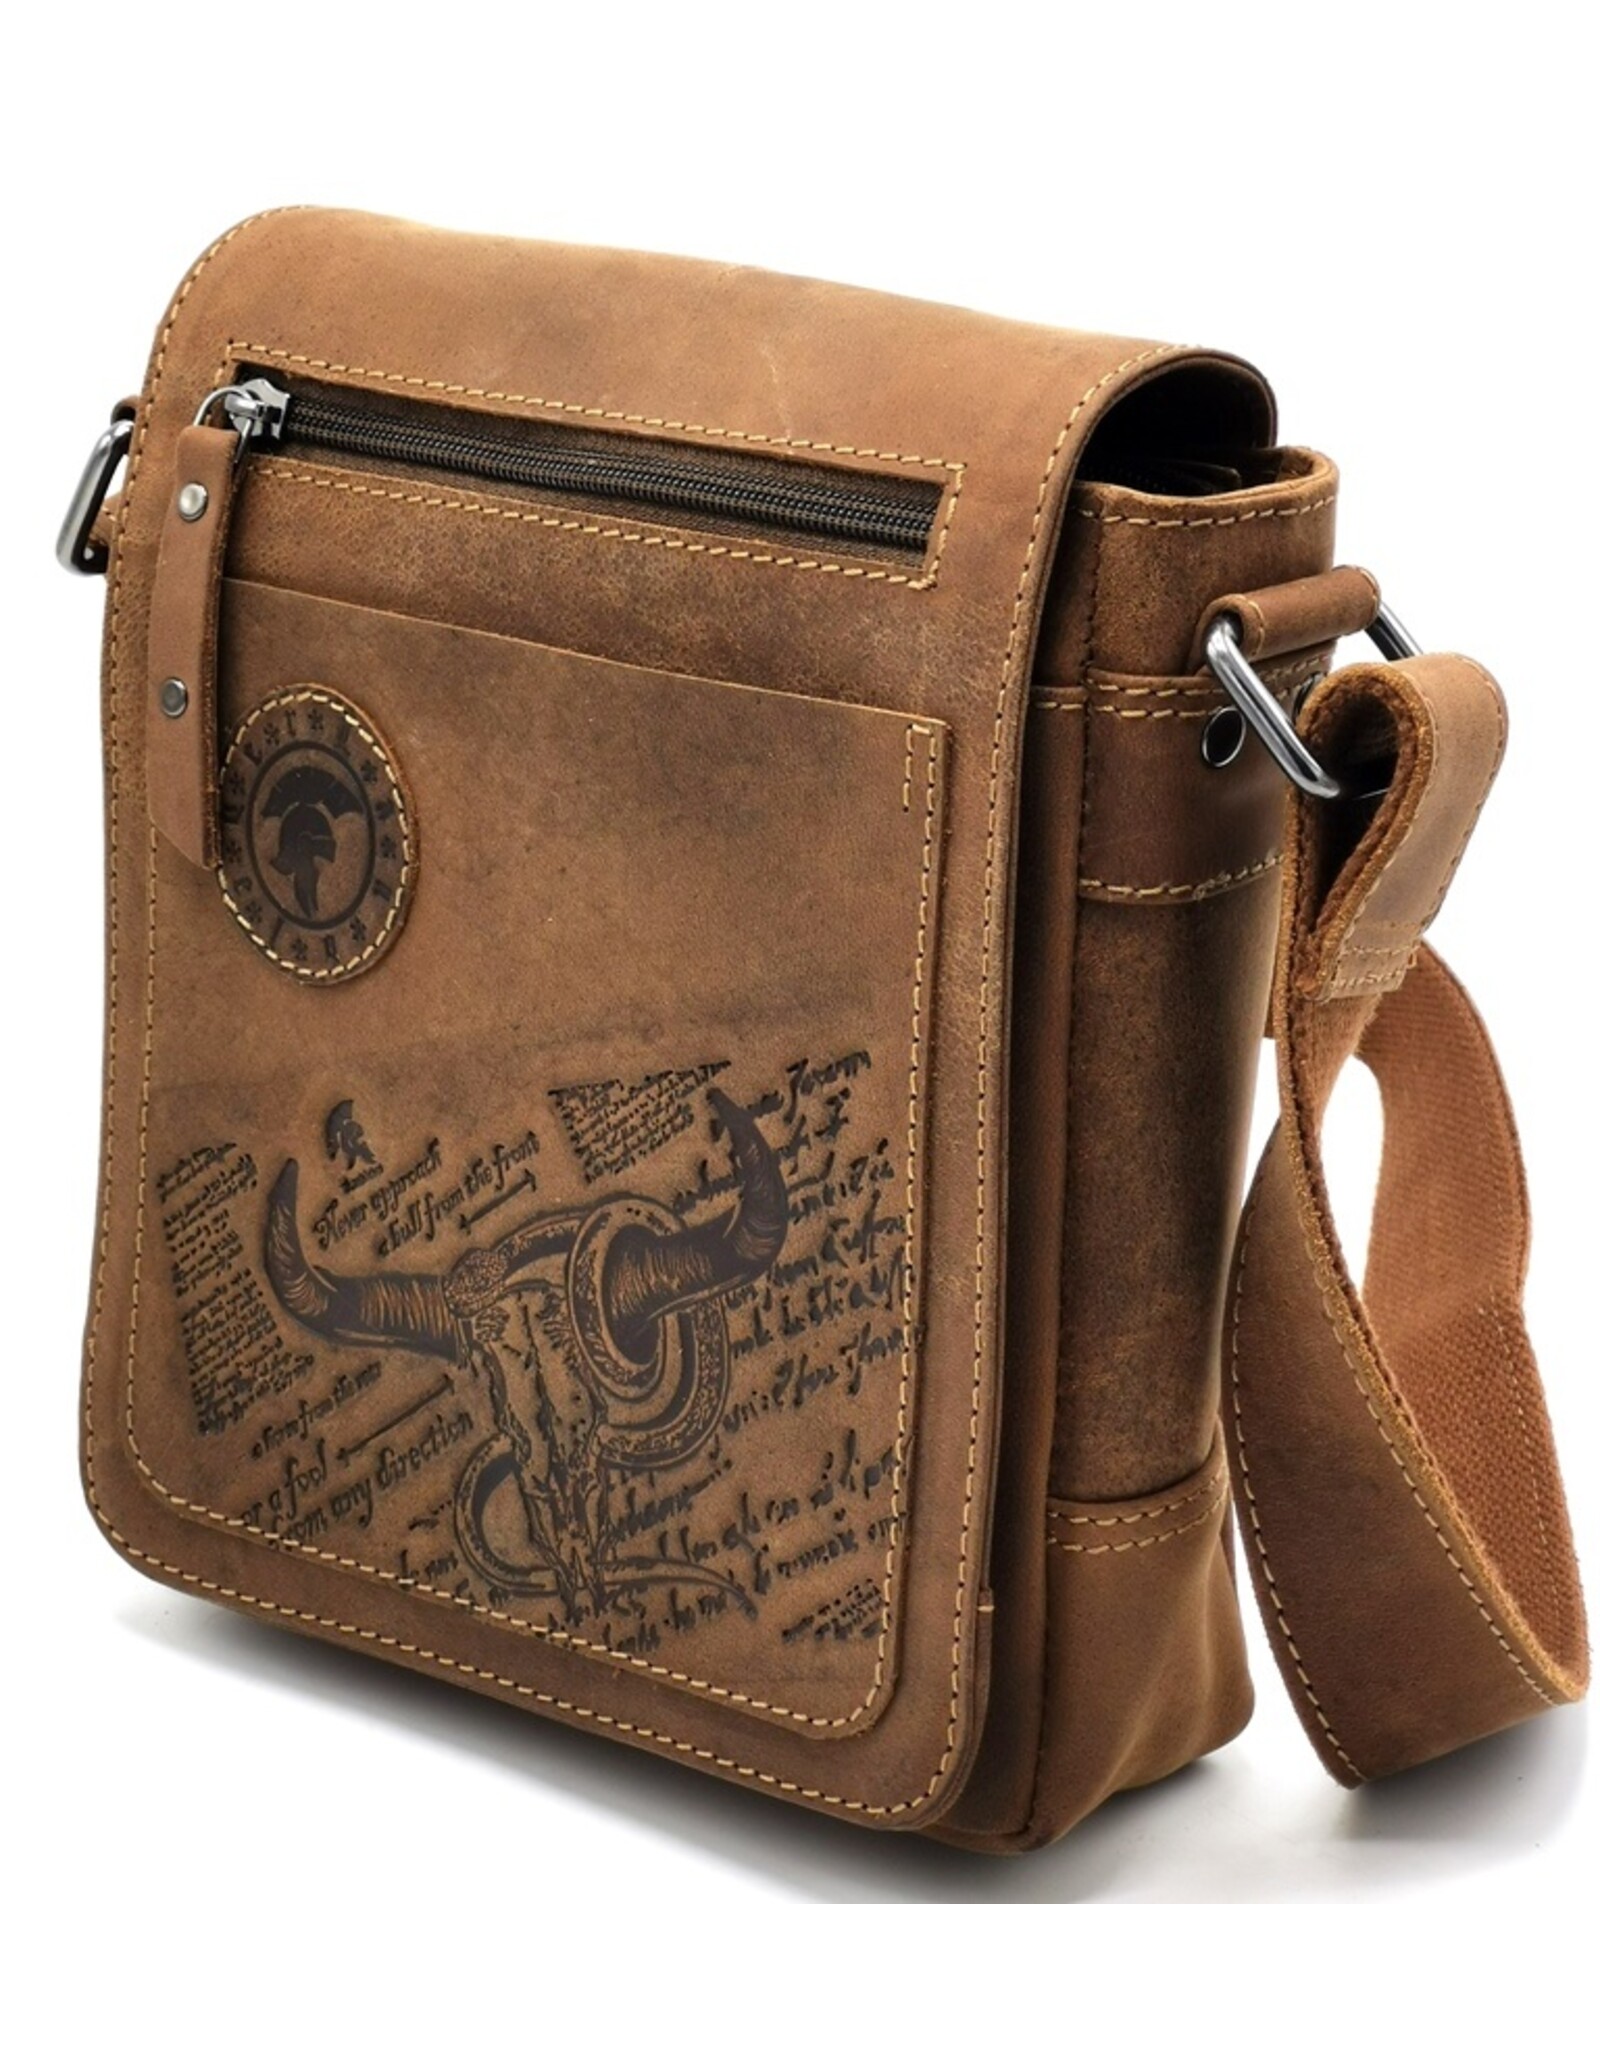 LandLeder Leather bags - Shoulder bag with cover BULL & SNAKE